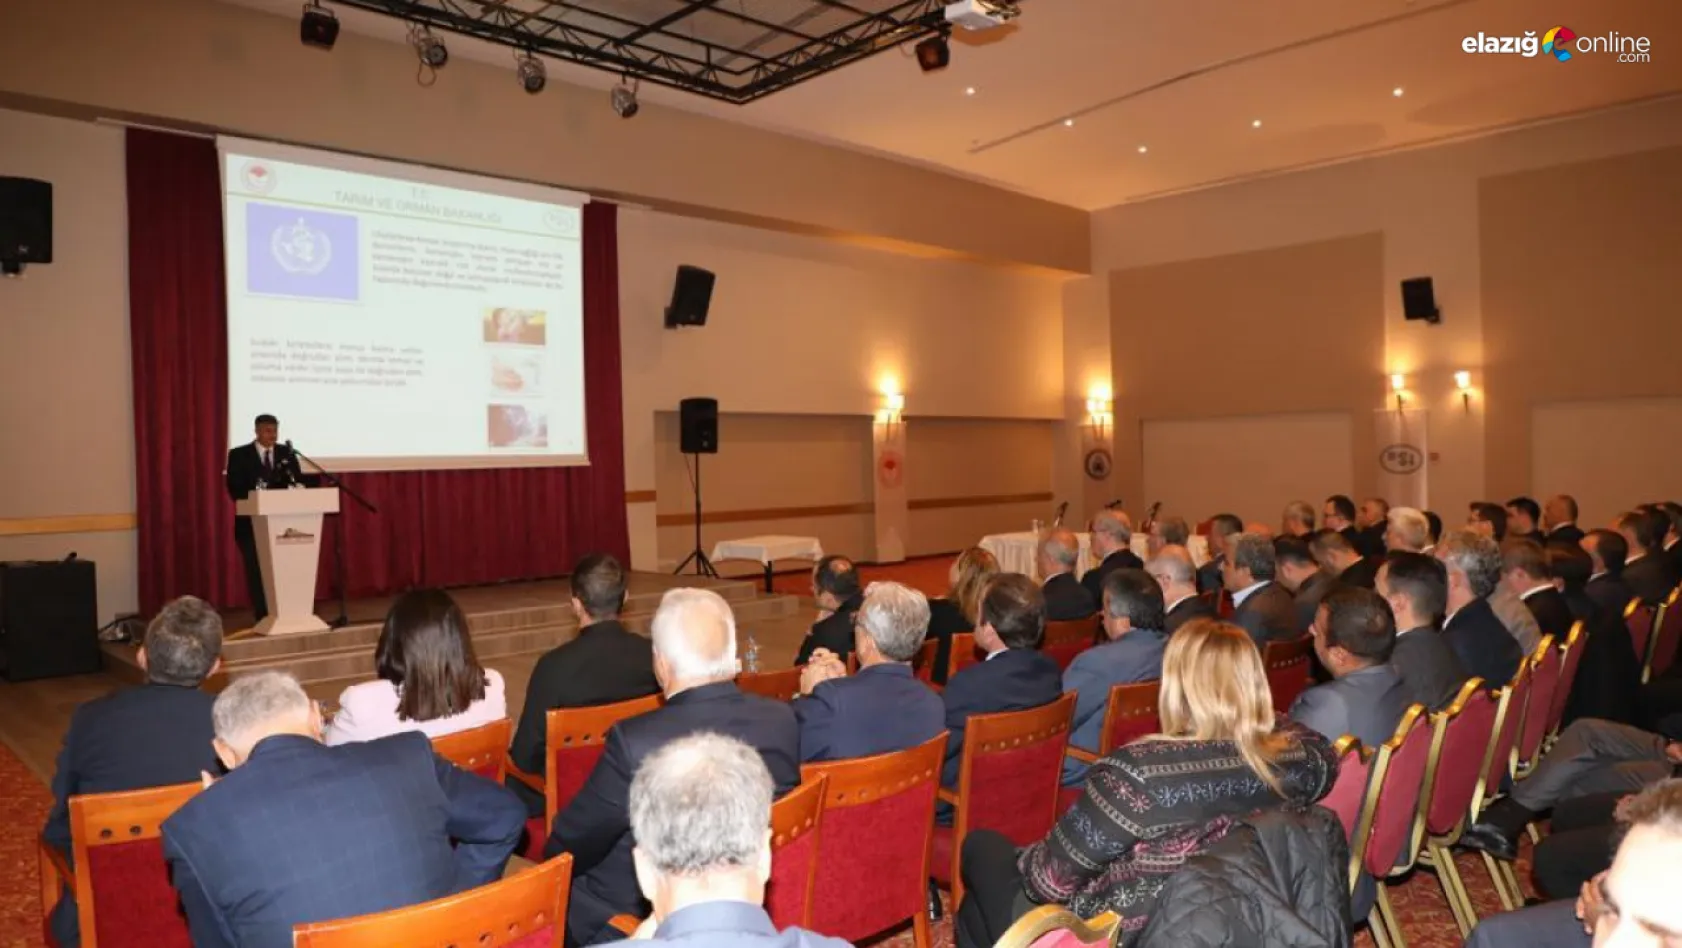 Elazığ'da 'Fırat-Dicle 1. Alt Havzası Havza Yönetim Heyeti Toplantısı' gerçekleştirildi